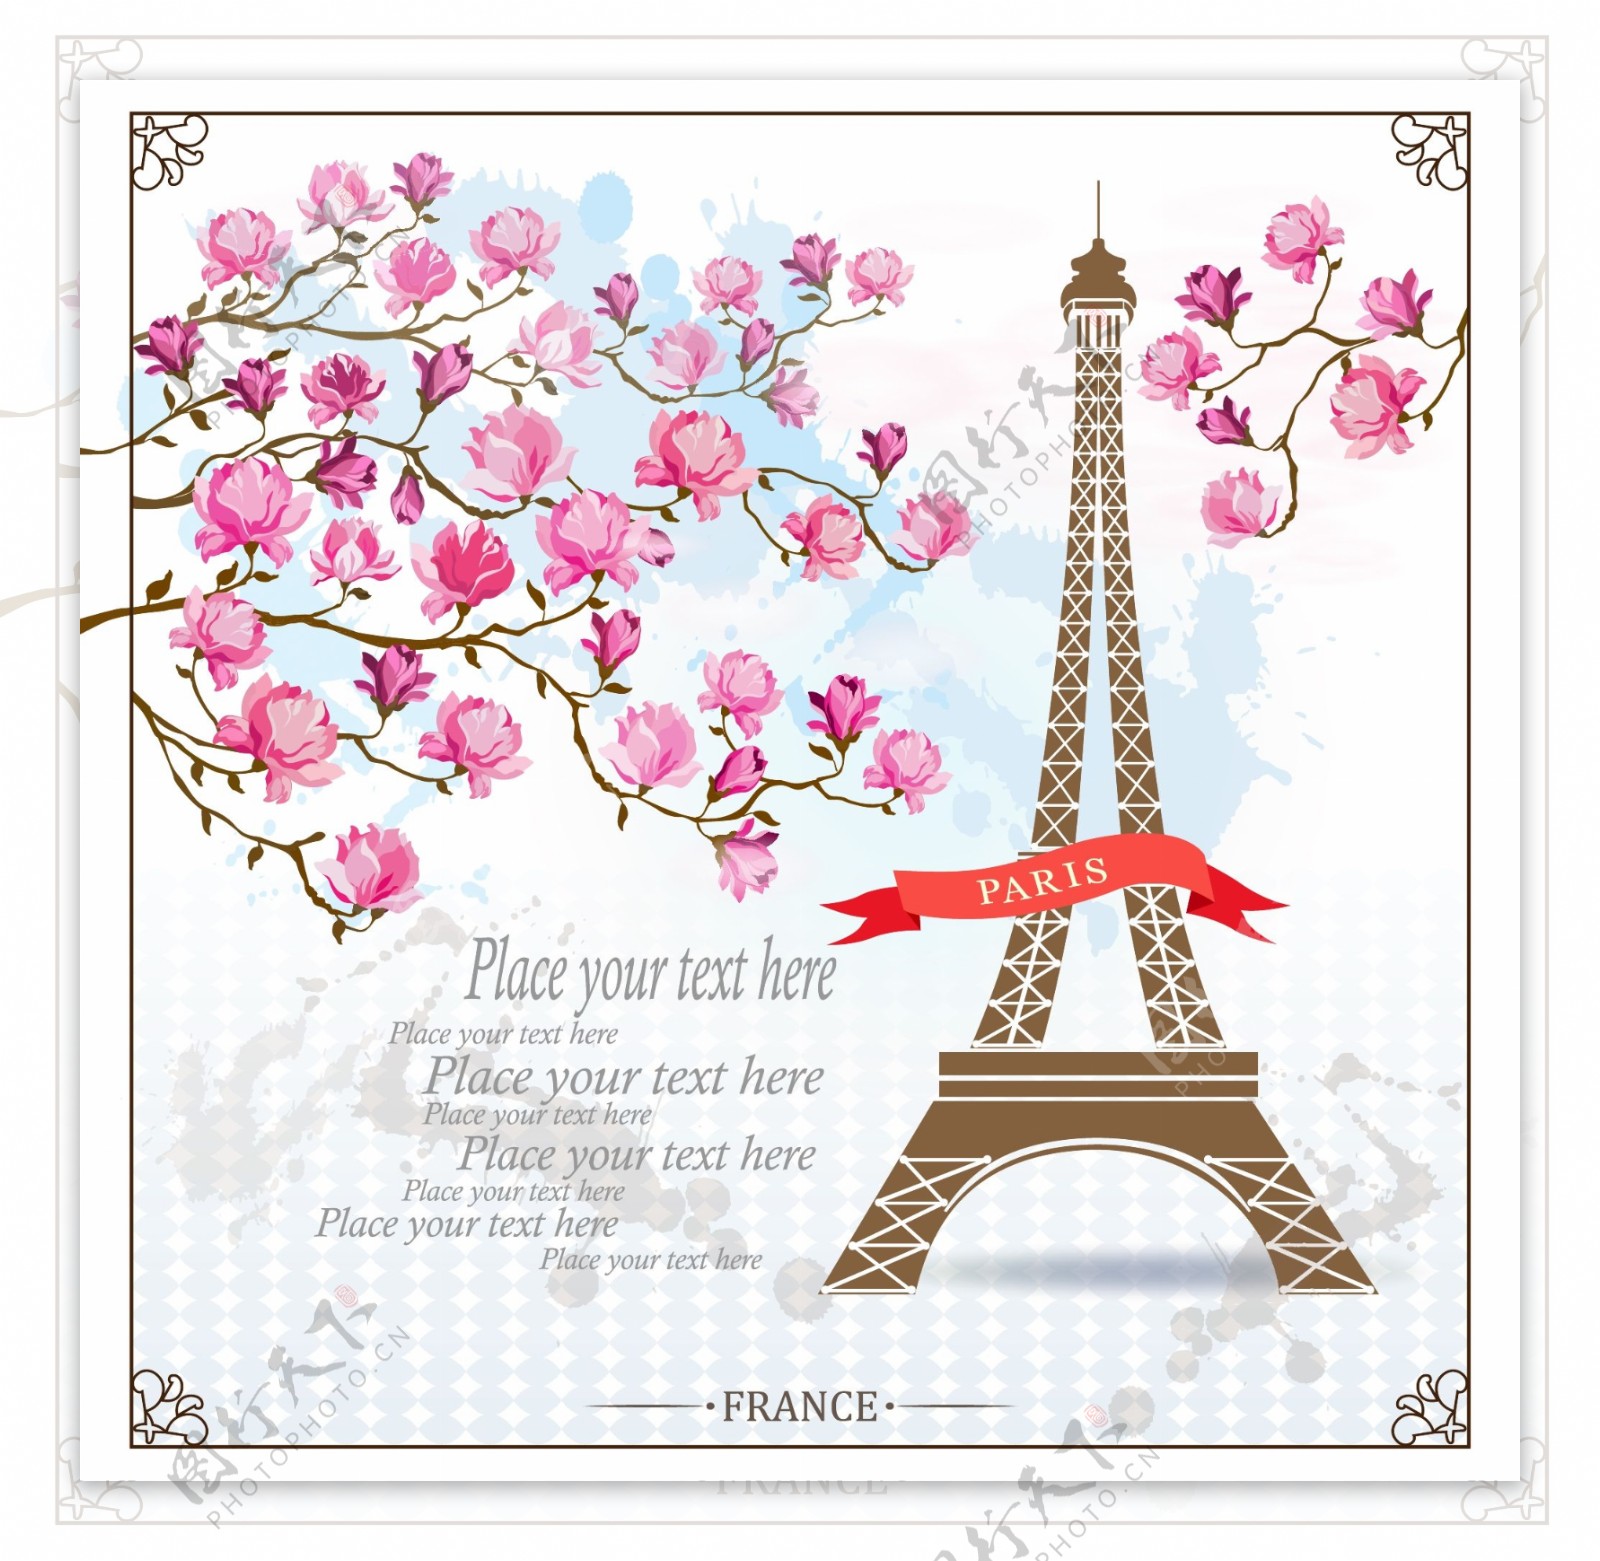 紫玉兰和巴黎铁塔矢量素材